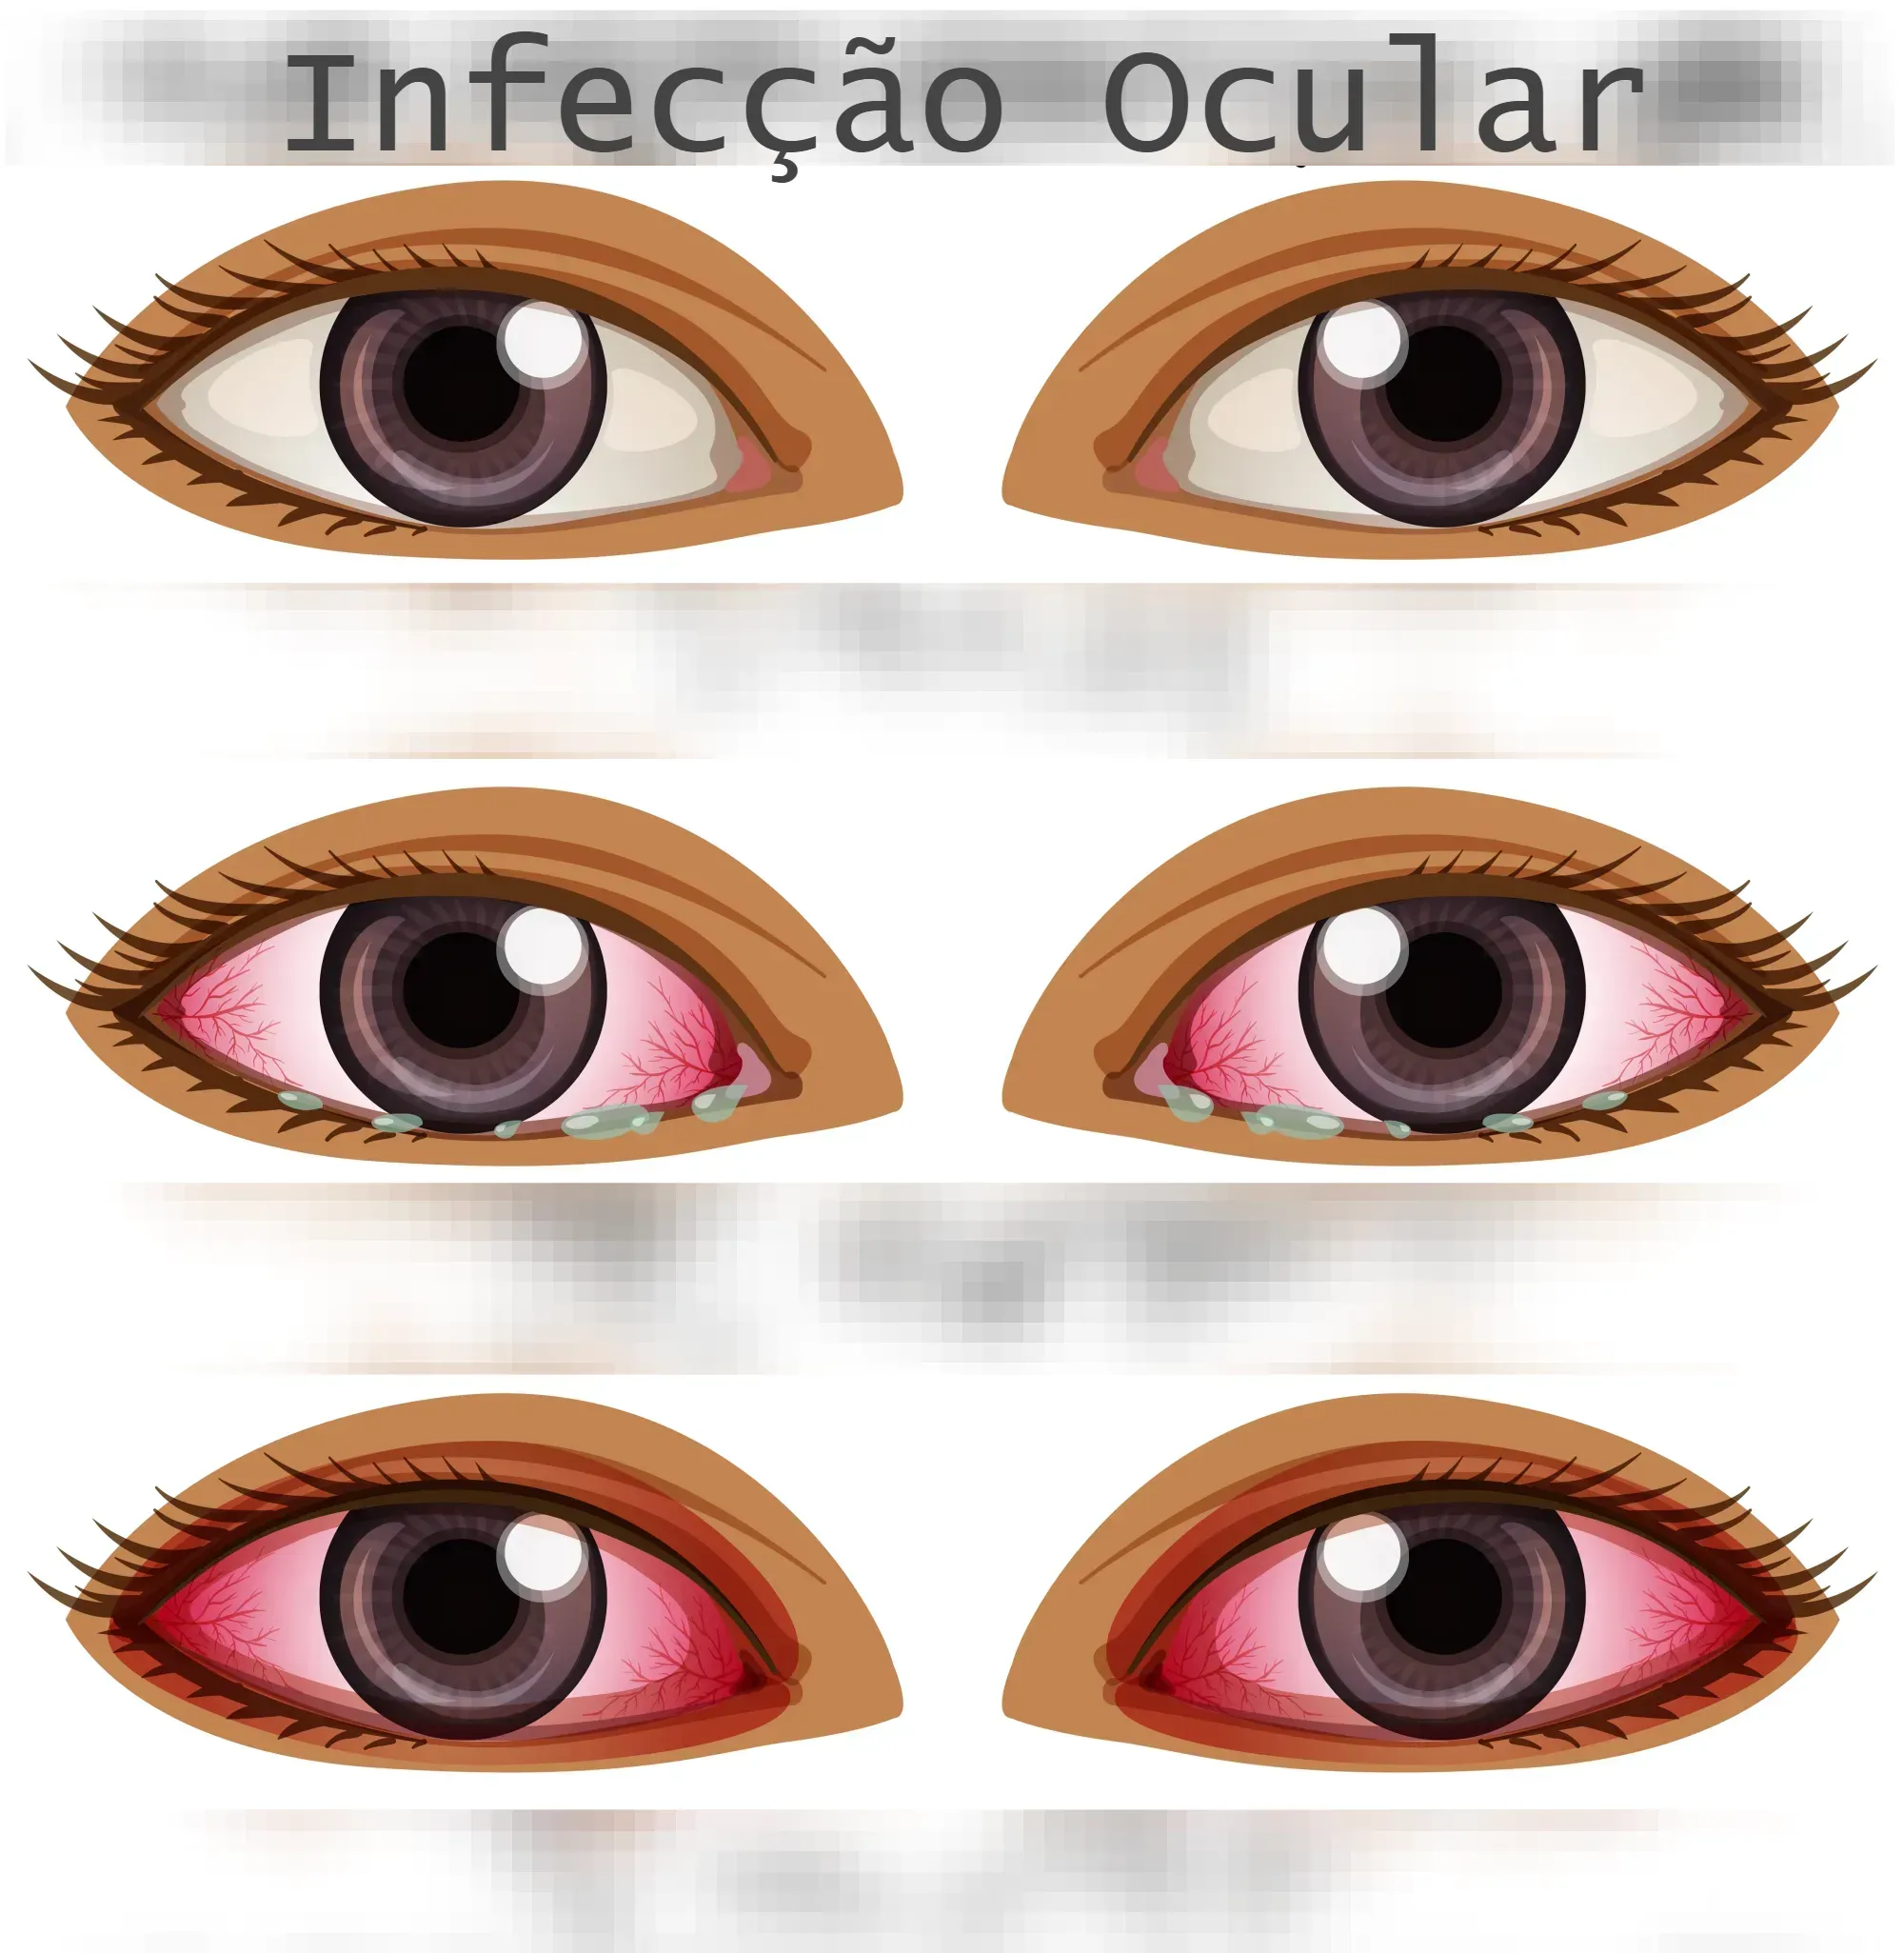 Infecção Ocular